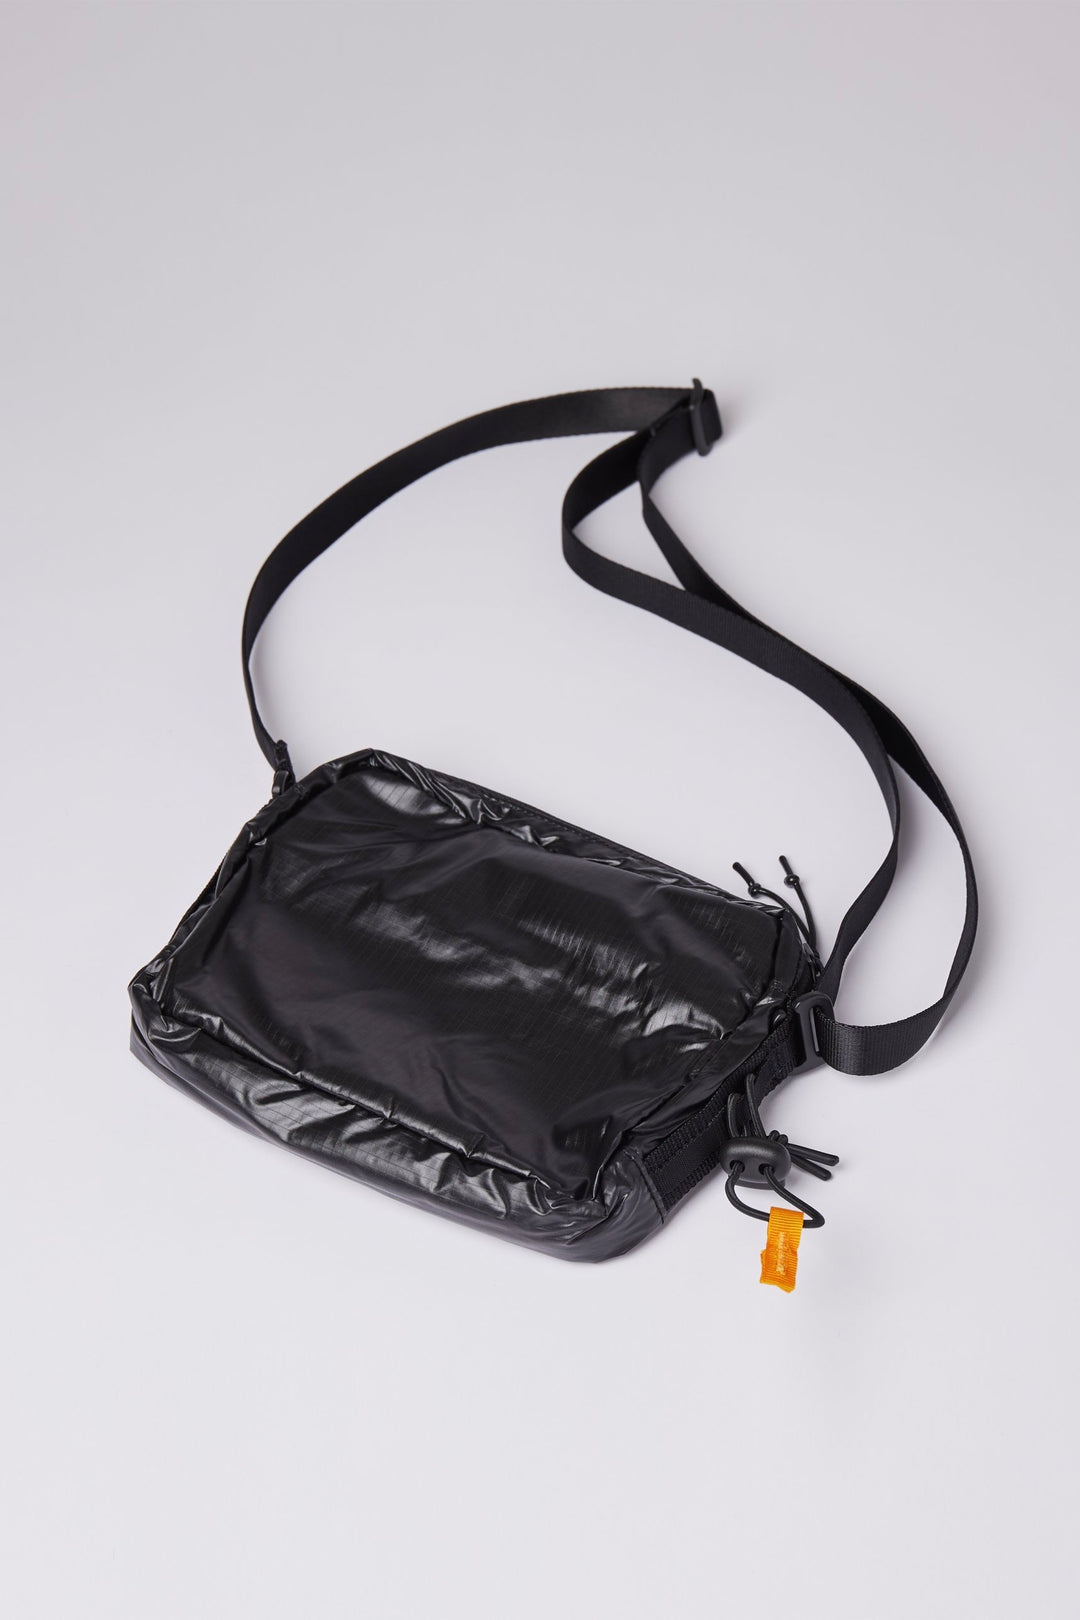 RUNE shoulder bag black